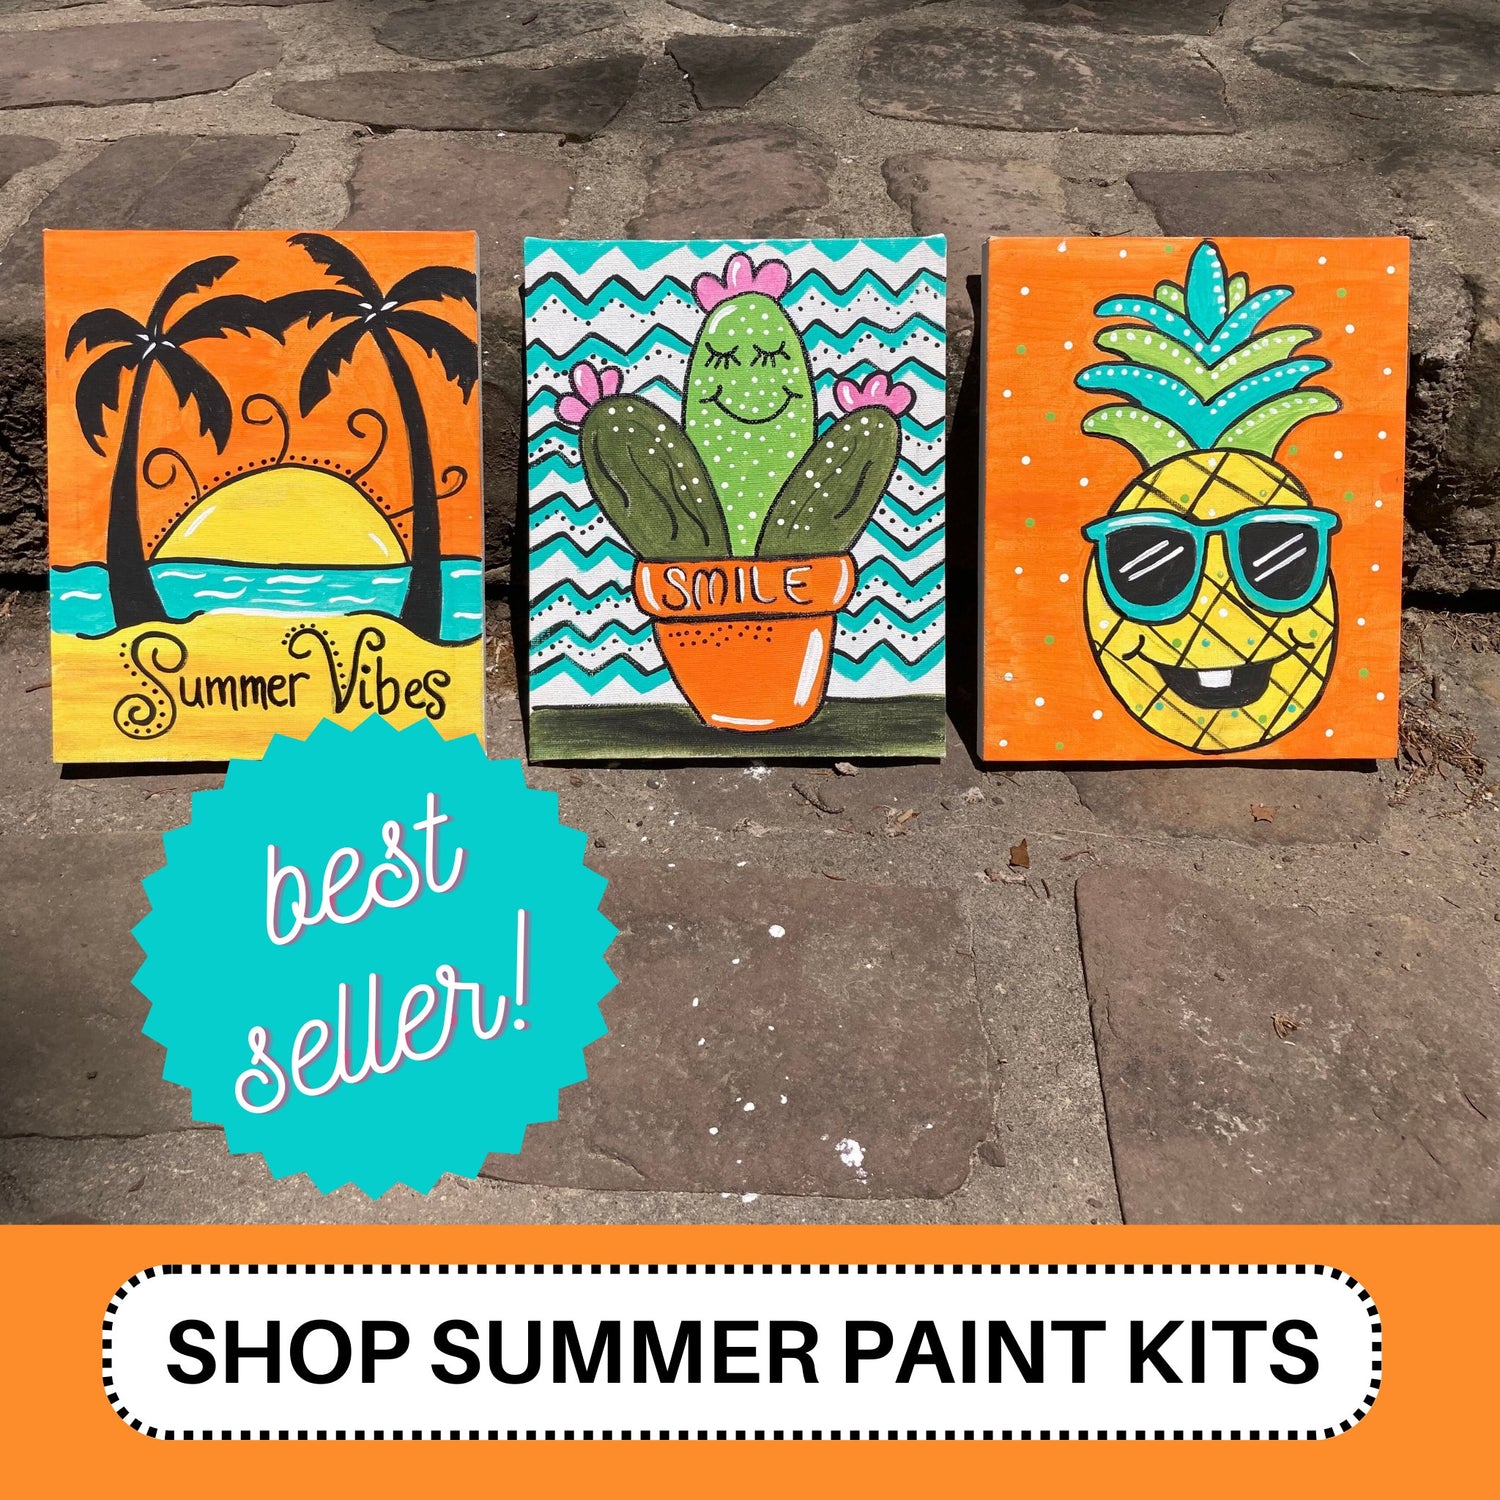 Summer Paint Kit Themes